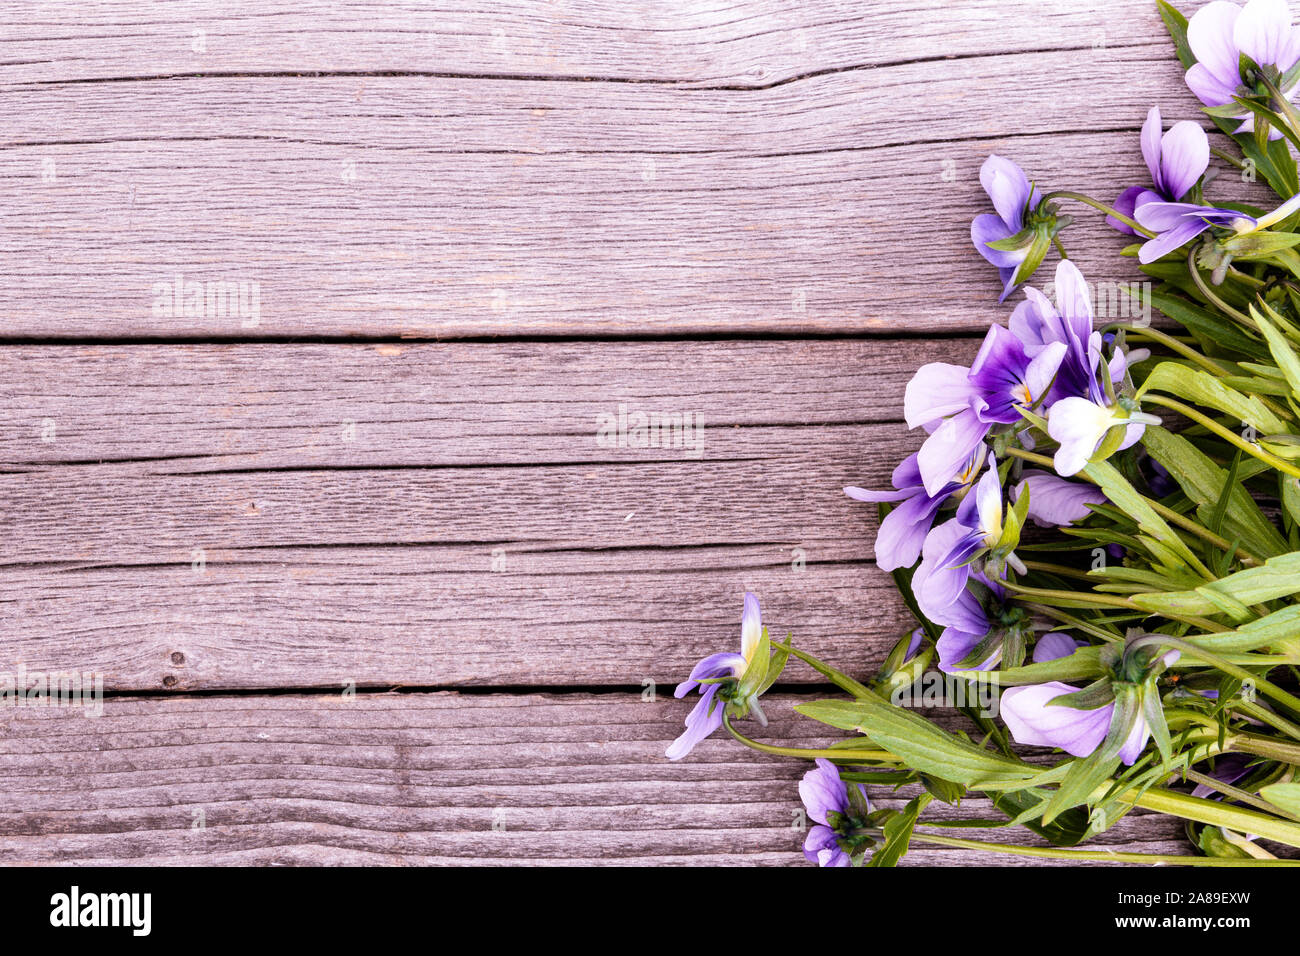 Bouquet de violettes violet sur table en bois. Anciennes cartes avec des fleurs de jardin Banque D'Images